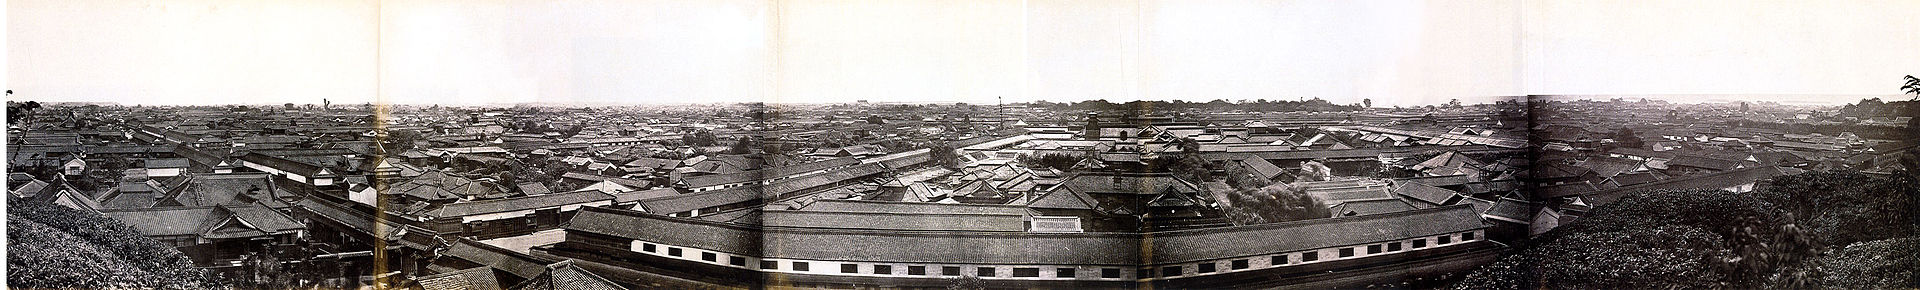 11 Панорама Токио (тогда он назывался Эдо), 1865-1866.jpg